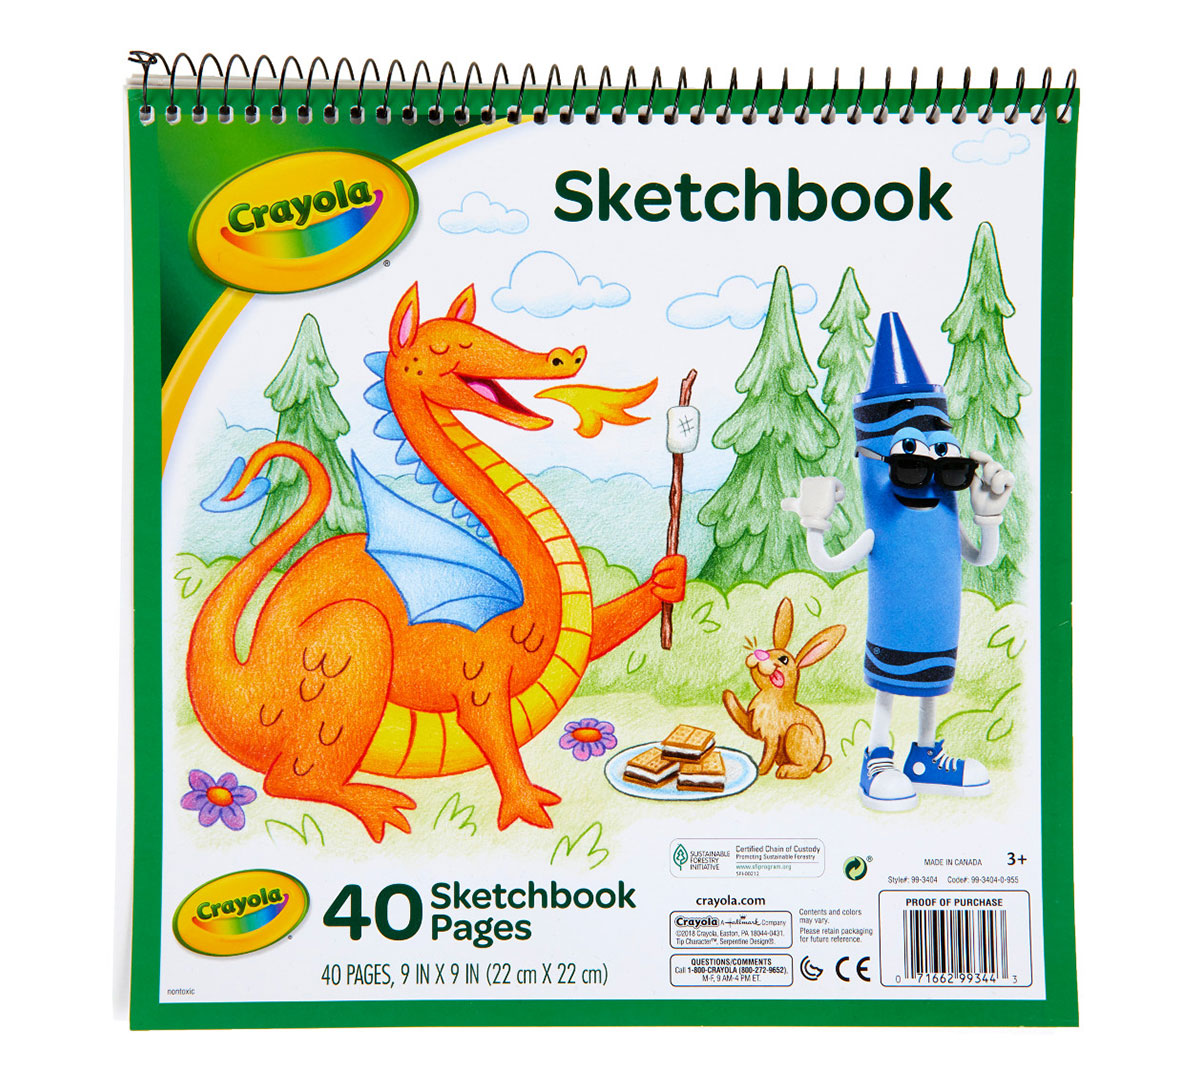 https://shop.crayola.com/on/demandware.static/-/Sites-crayola-storefront/default/dw01ad8a55/images/99-3404-0-955_Sketchbook_40-page_F1.jpg